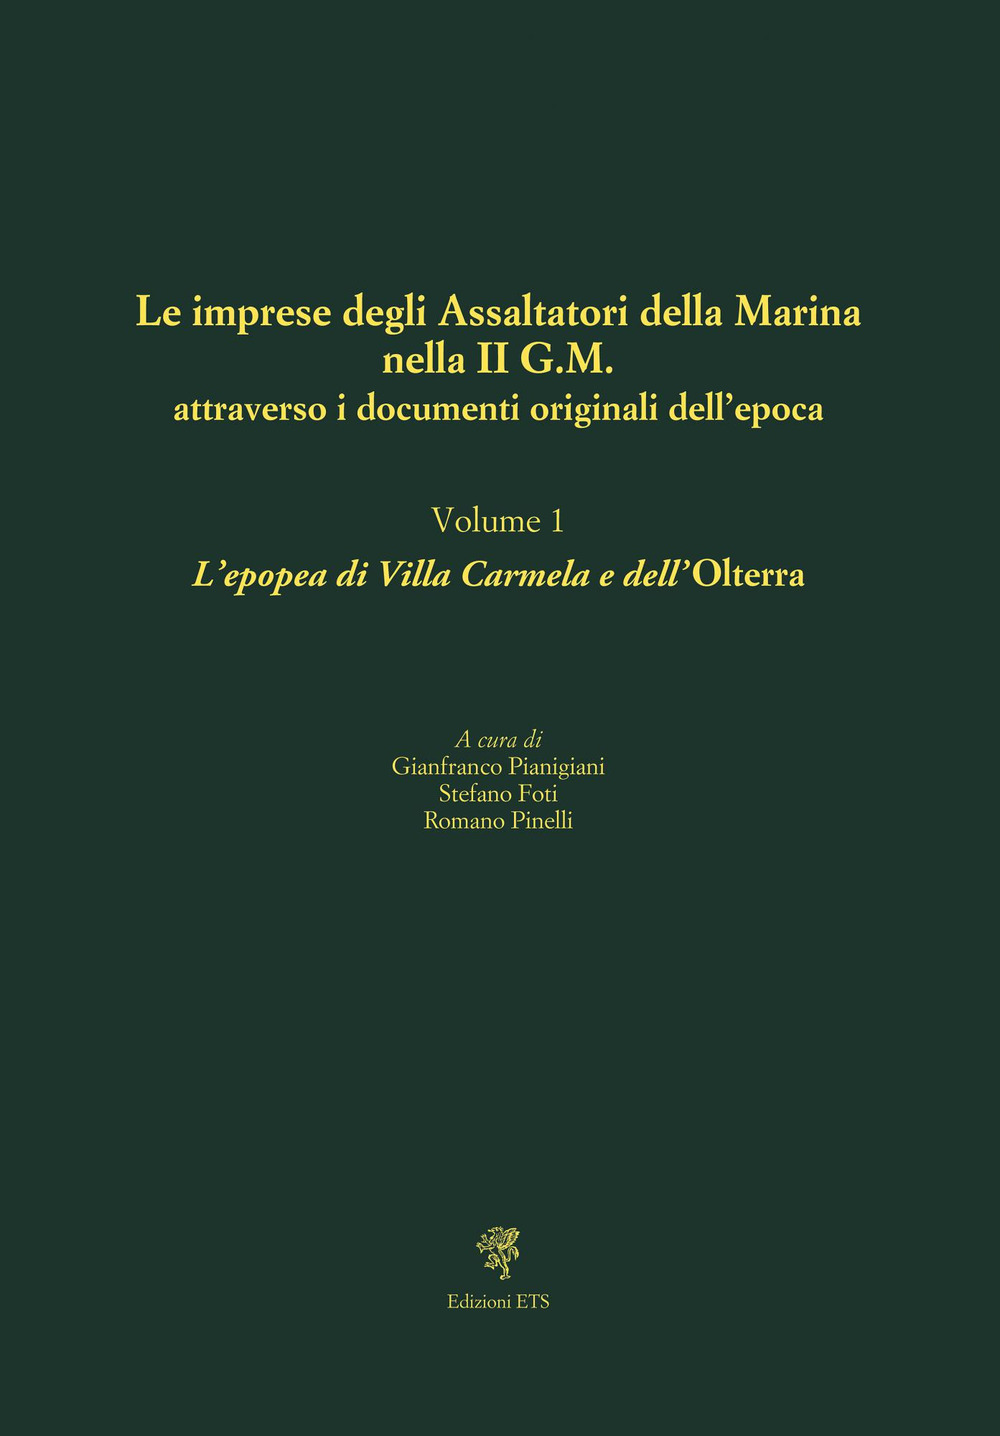 Le imprese degli assaltatori della Marina nella II G.M. attraverso i documenti originali dell'epoca. Vol. 1: L' epopea di Villa Carmela e dell'Olterra